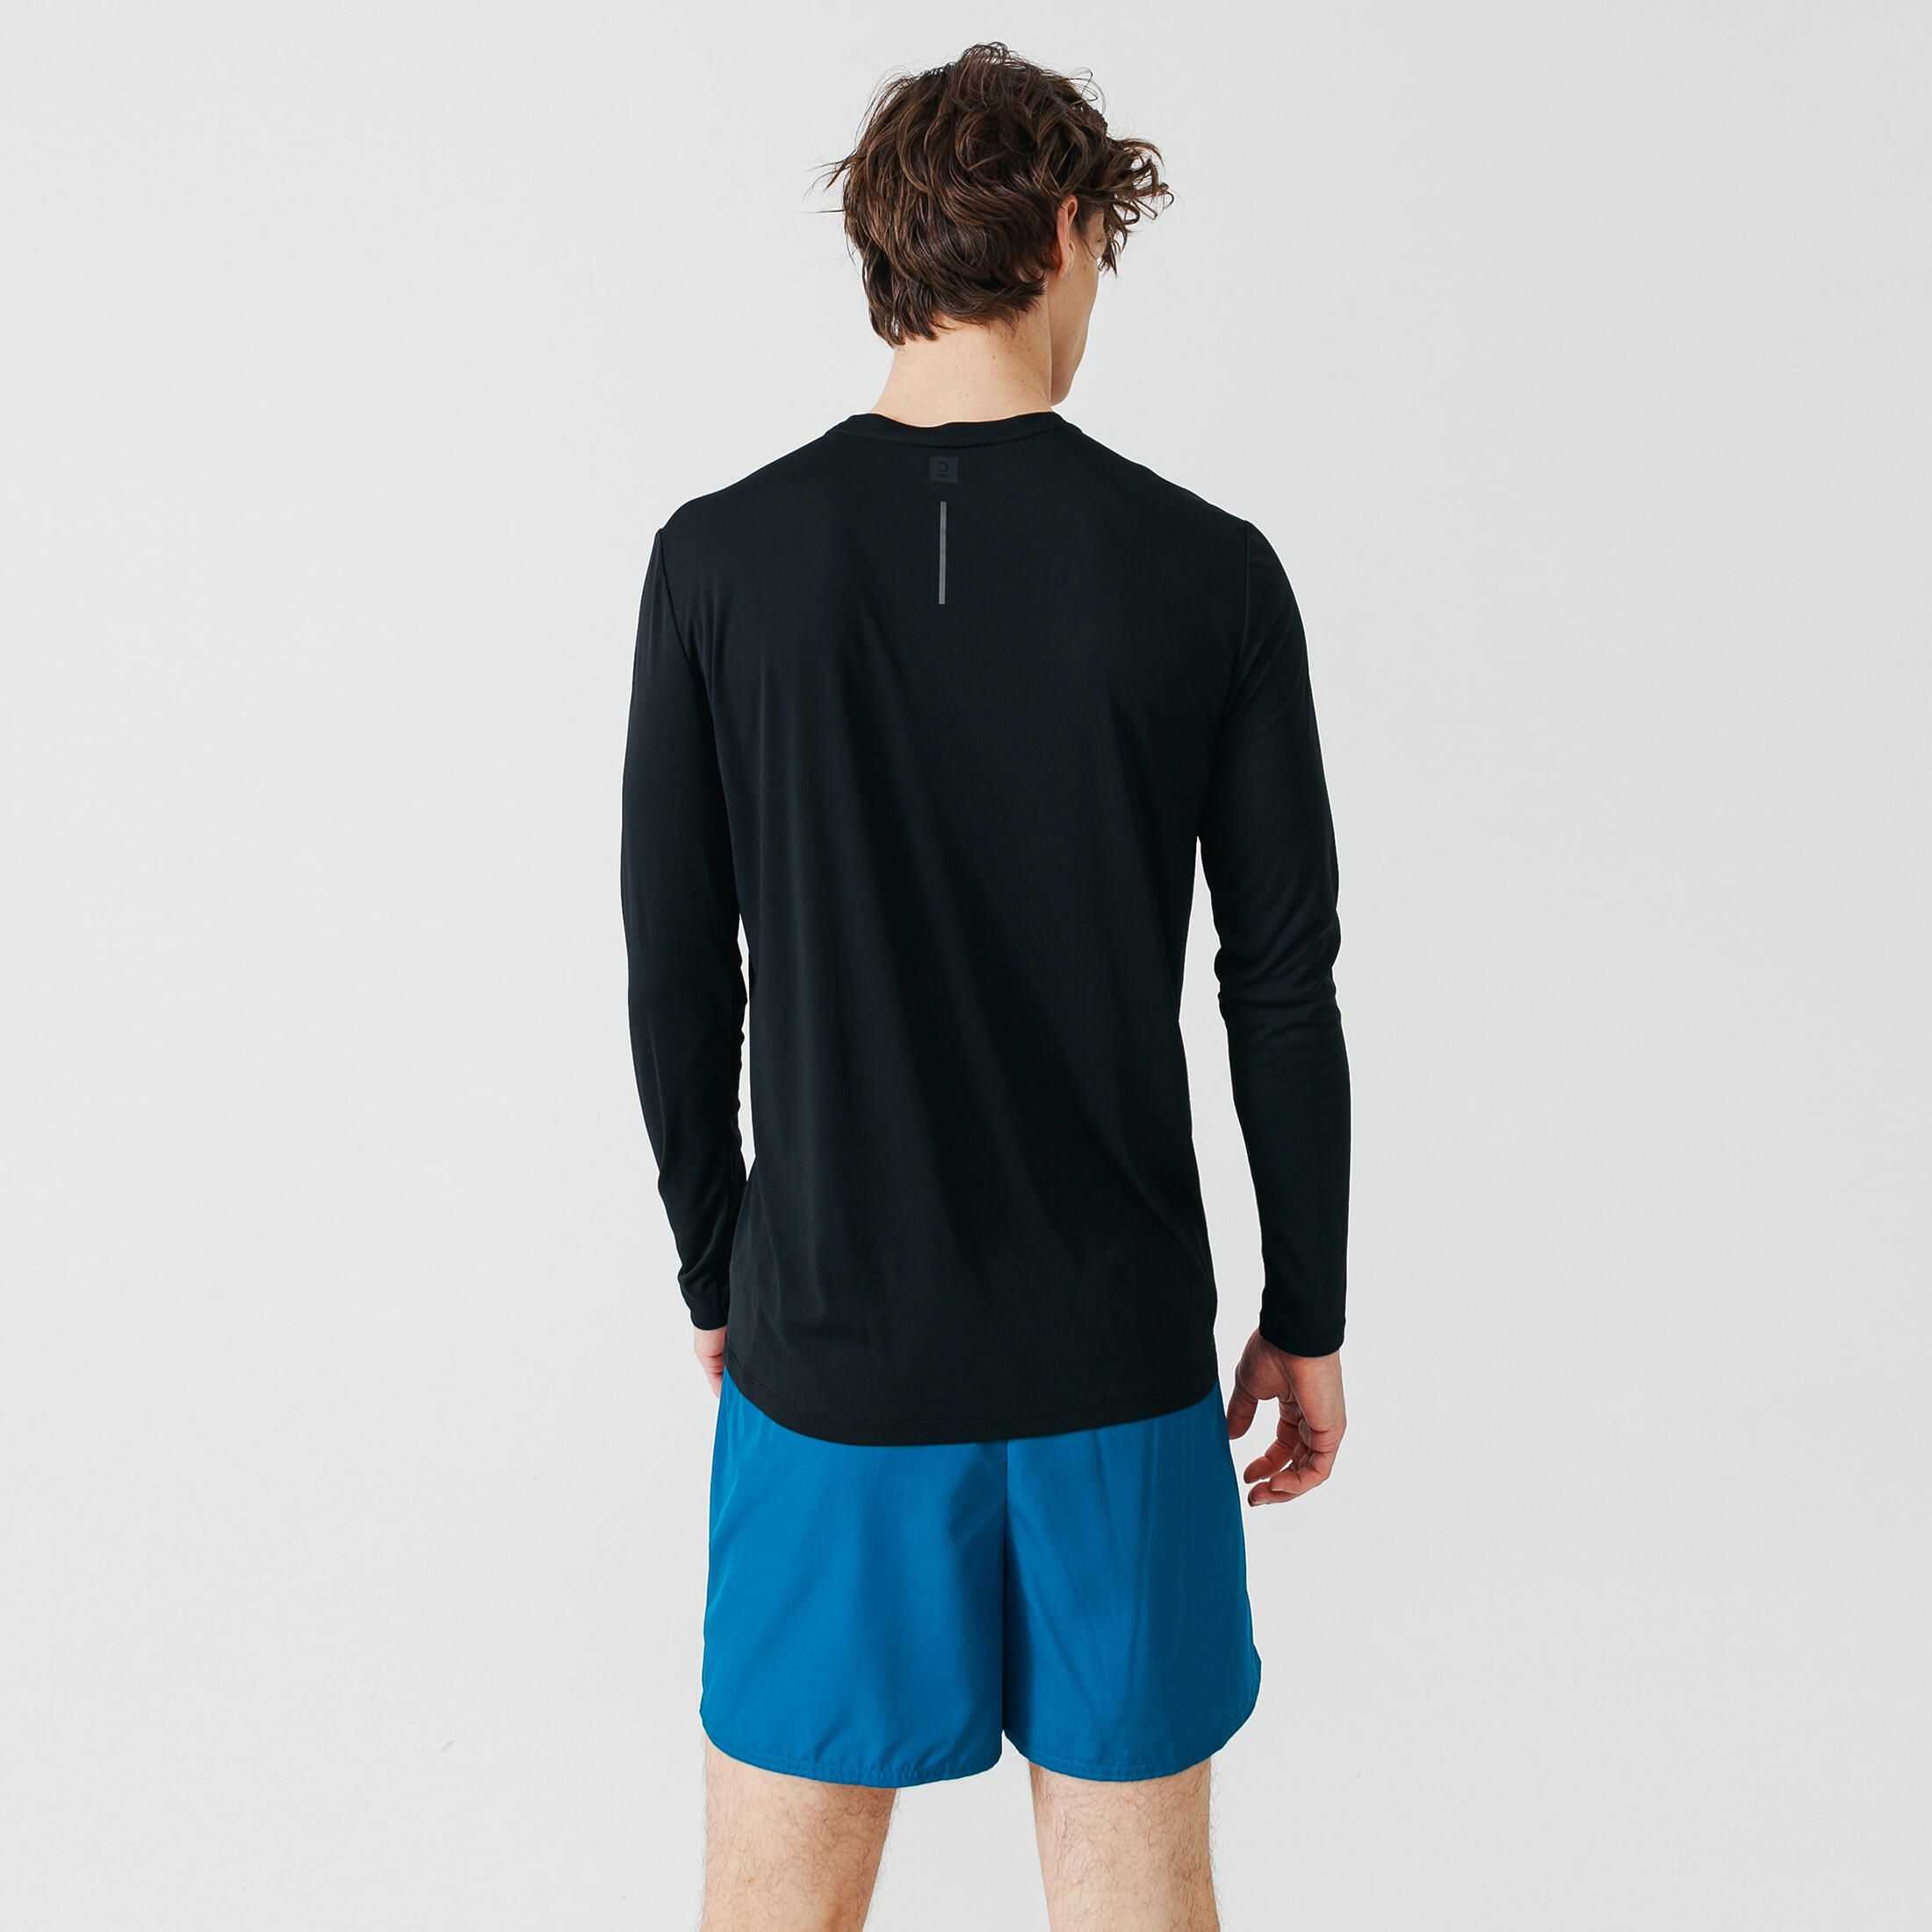 Men's Anti-UV Long-Sleeved Shirt - Black